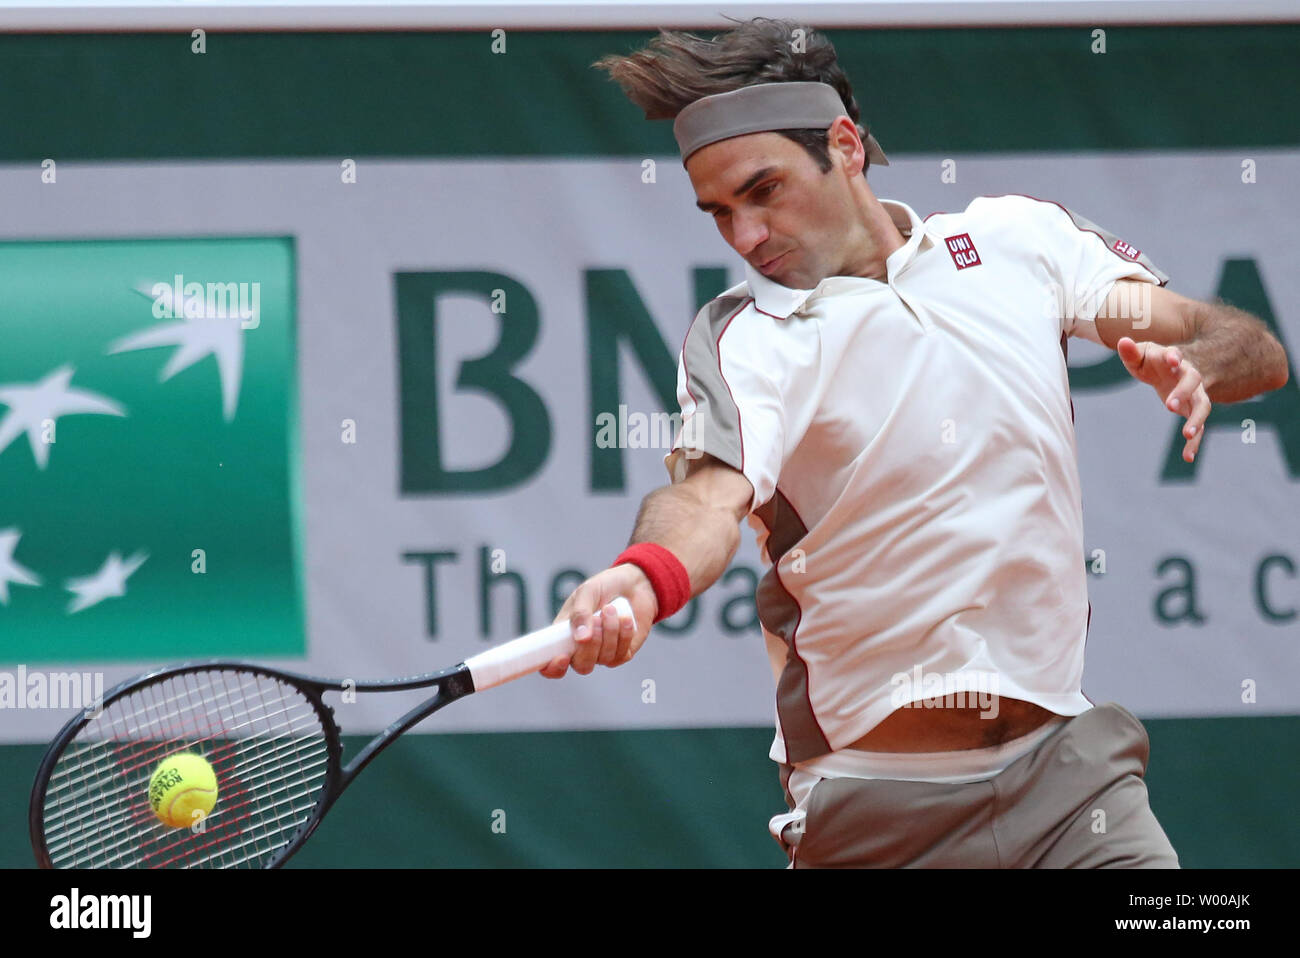 La Suisse de Roger Federer frappe un coup lors de son Open de France demi-finales match contre l'Espagne de Rafael Nadal à Roland Garros à Paris le 7 juin 2019. Nadal bat Federer 6-3, 6-4, 6-2) pour passer à la finale. Photo de David Silpa/UPI Banque D'Images